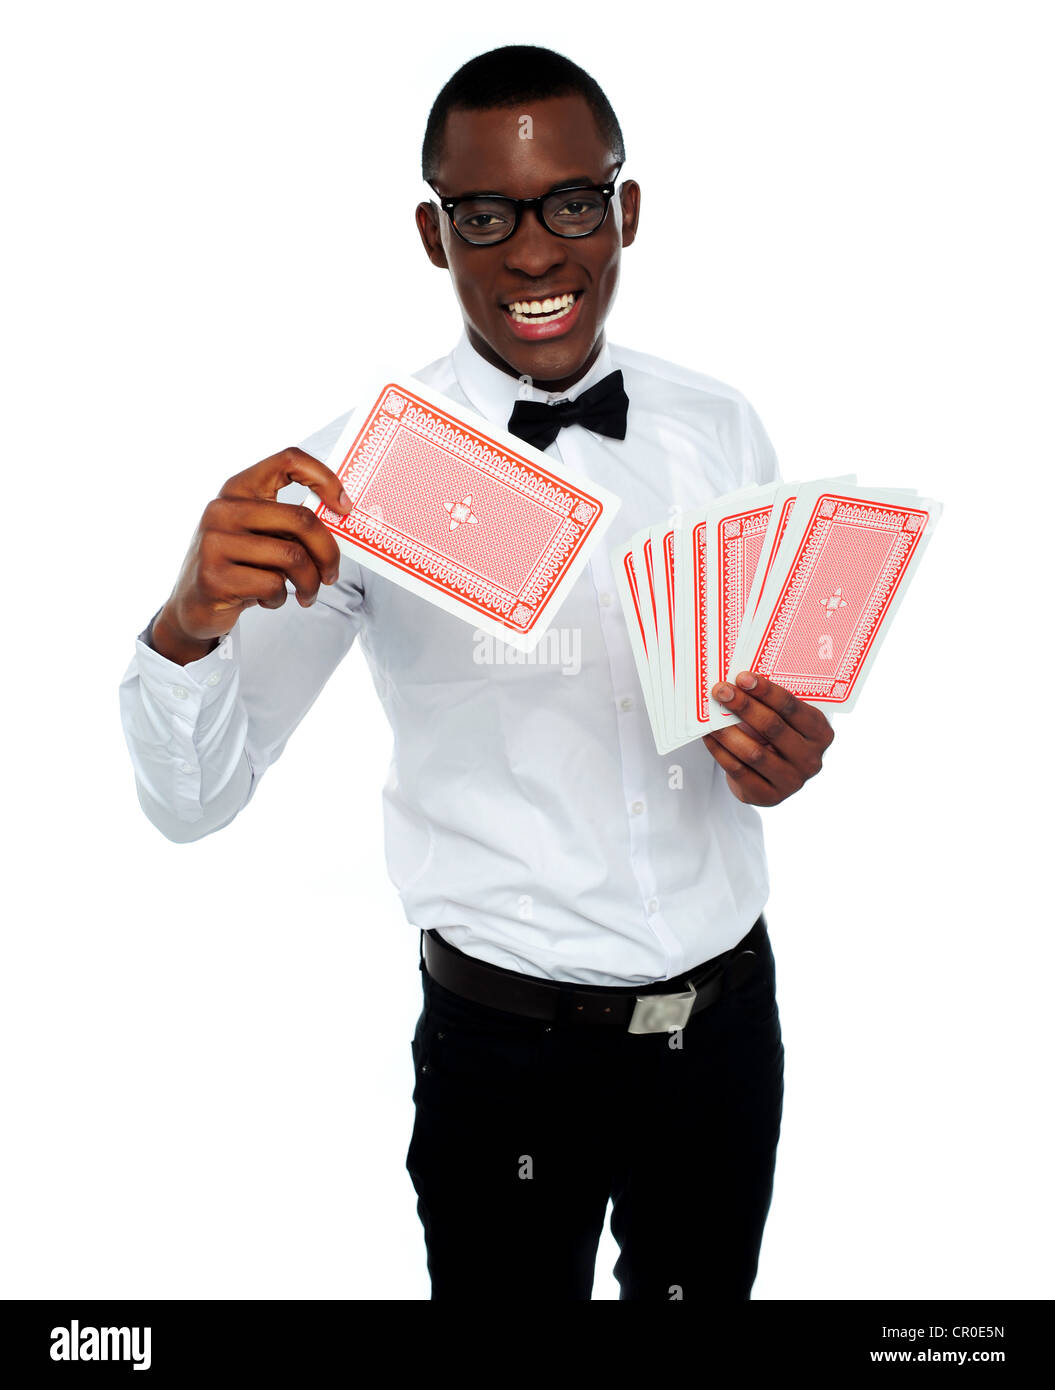 Giovane black boy tenendo fuori mazzo di carte e di lanciare la sua carta vincente Foto Stock